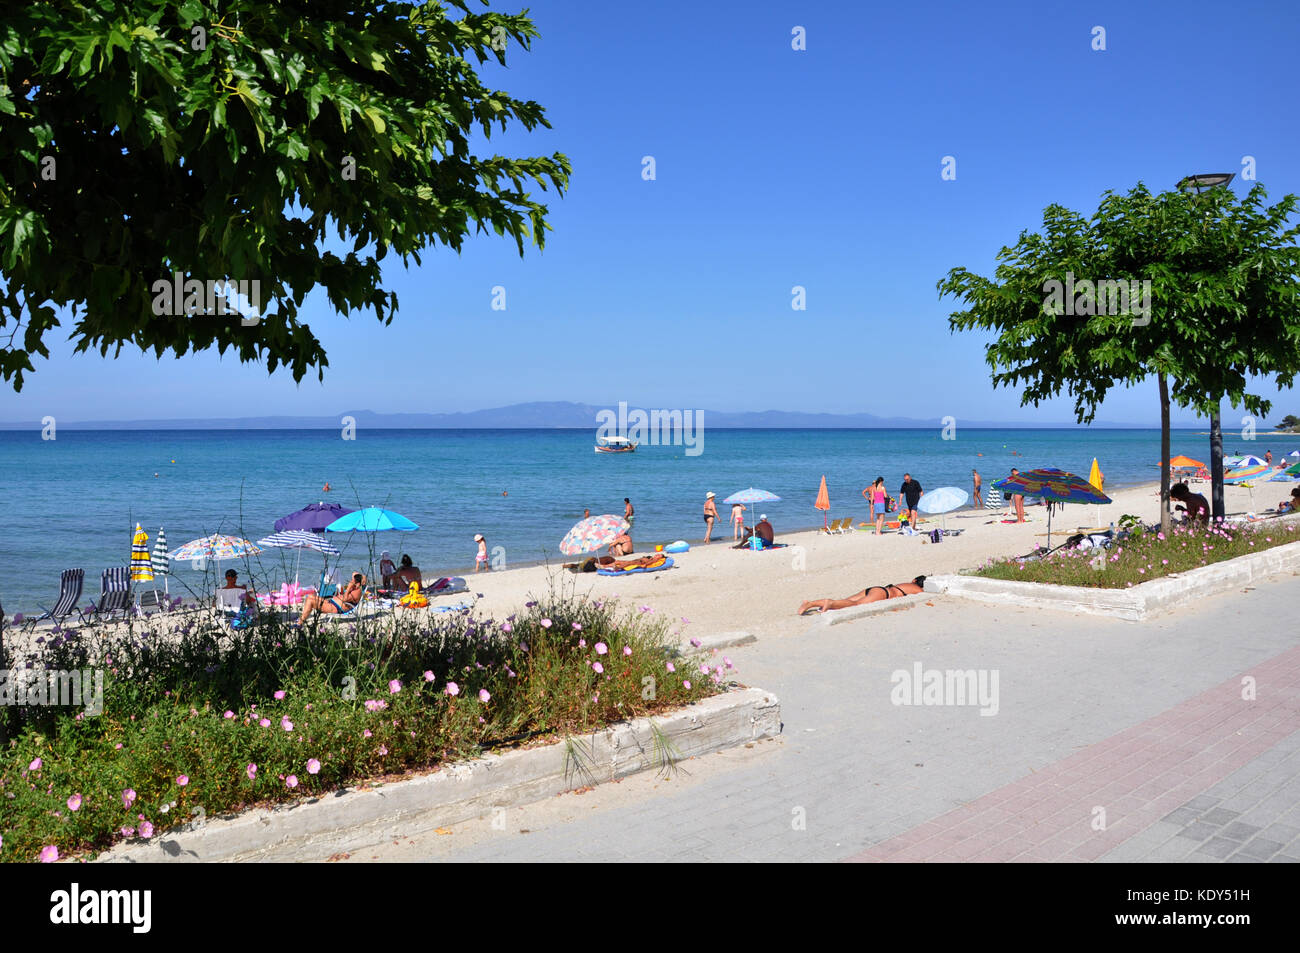 Spiaggia del villaggio di polychrono in penisola Kassandra di Halkidiki grecia Foto Stock